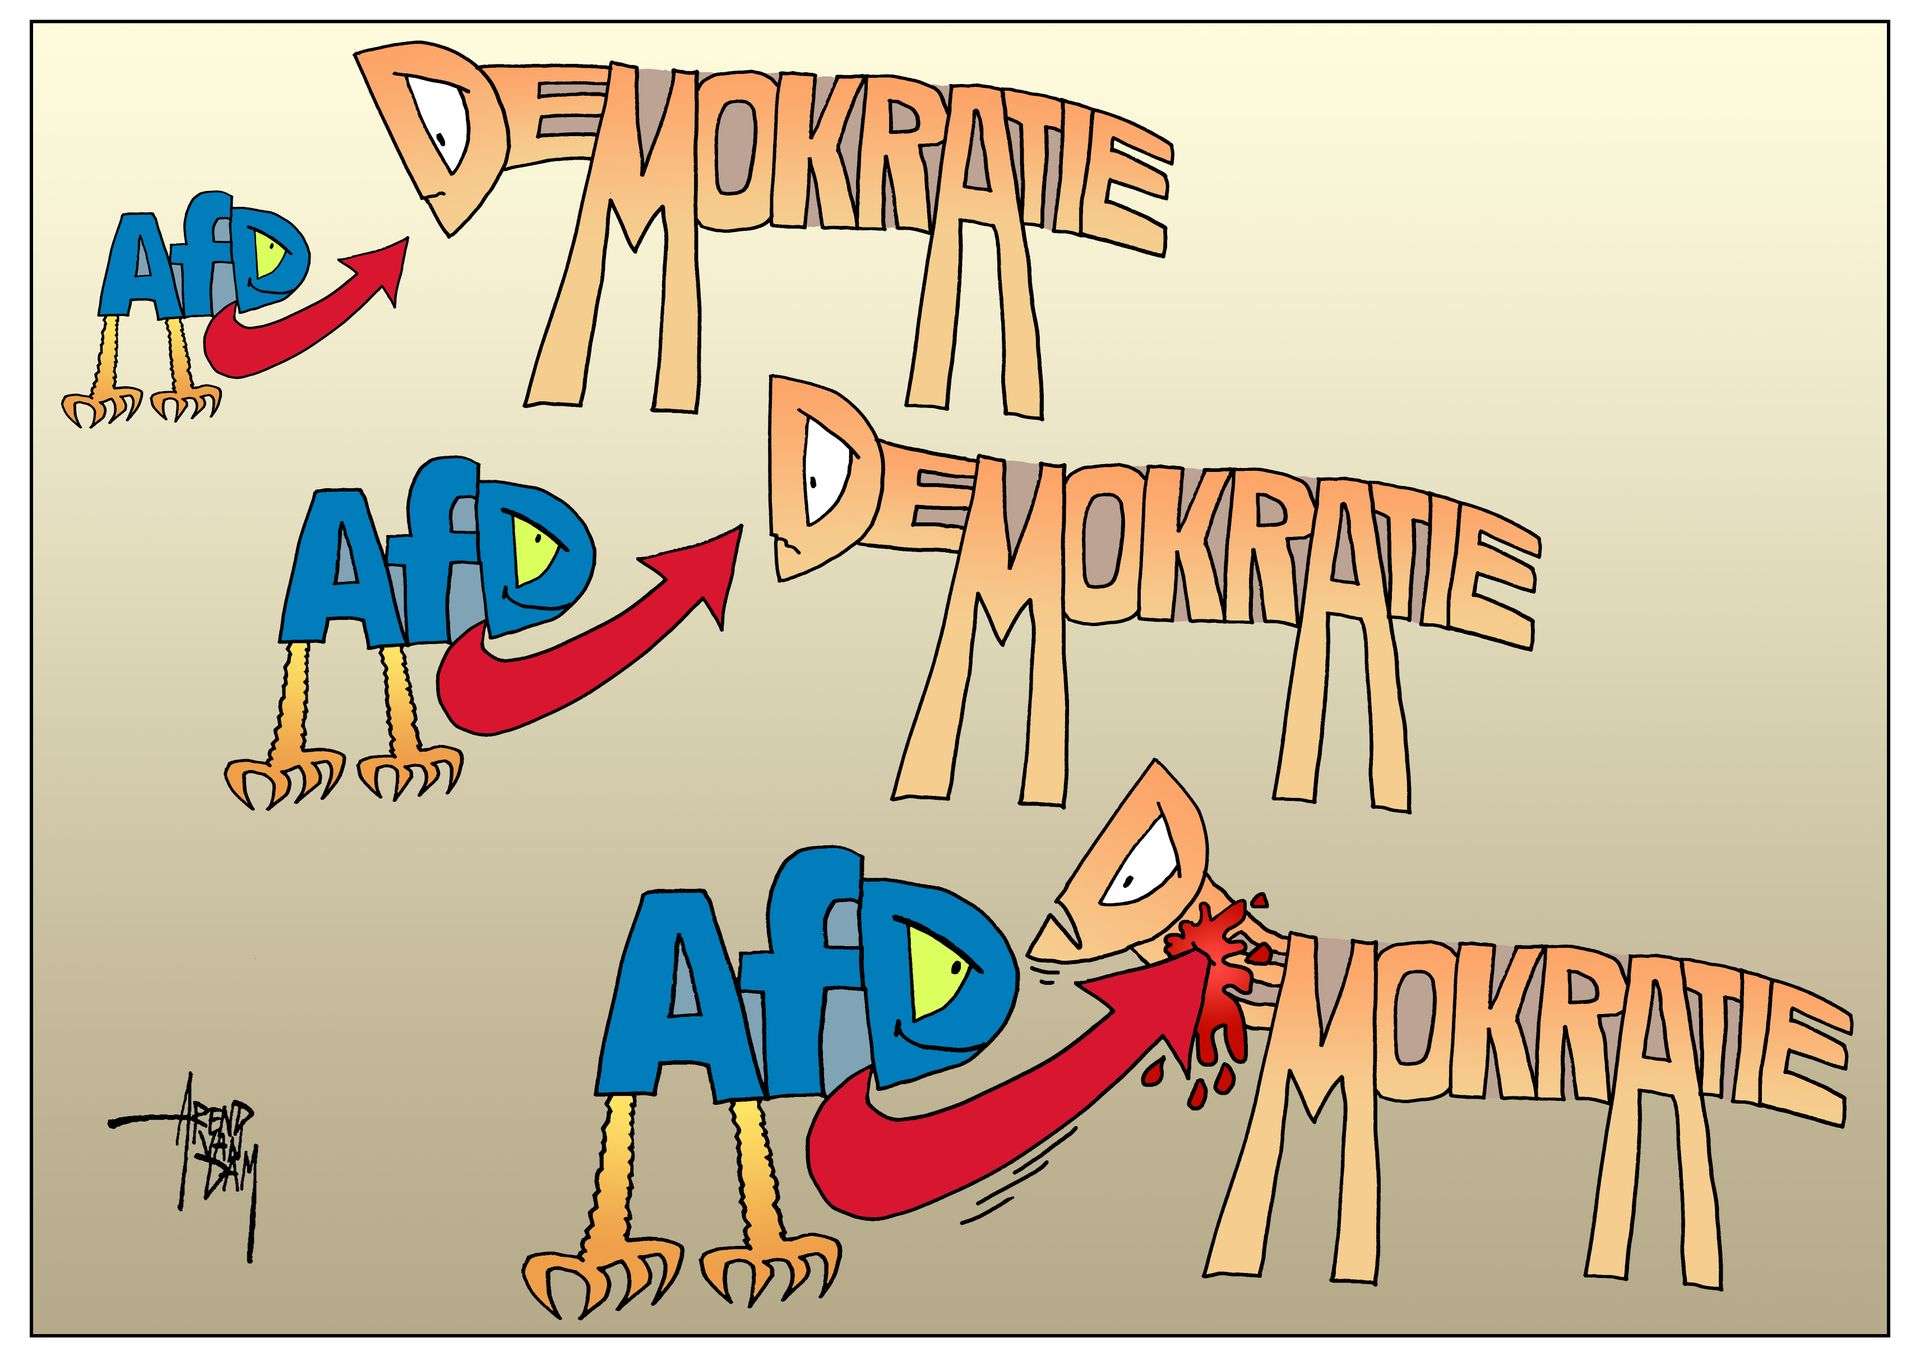 AfD-gegen-Demokratie+